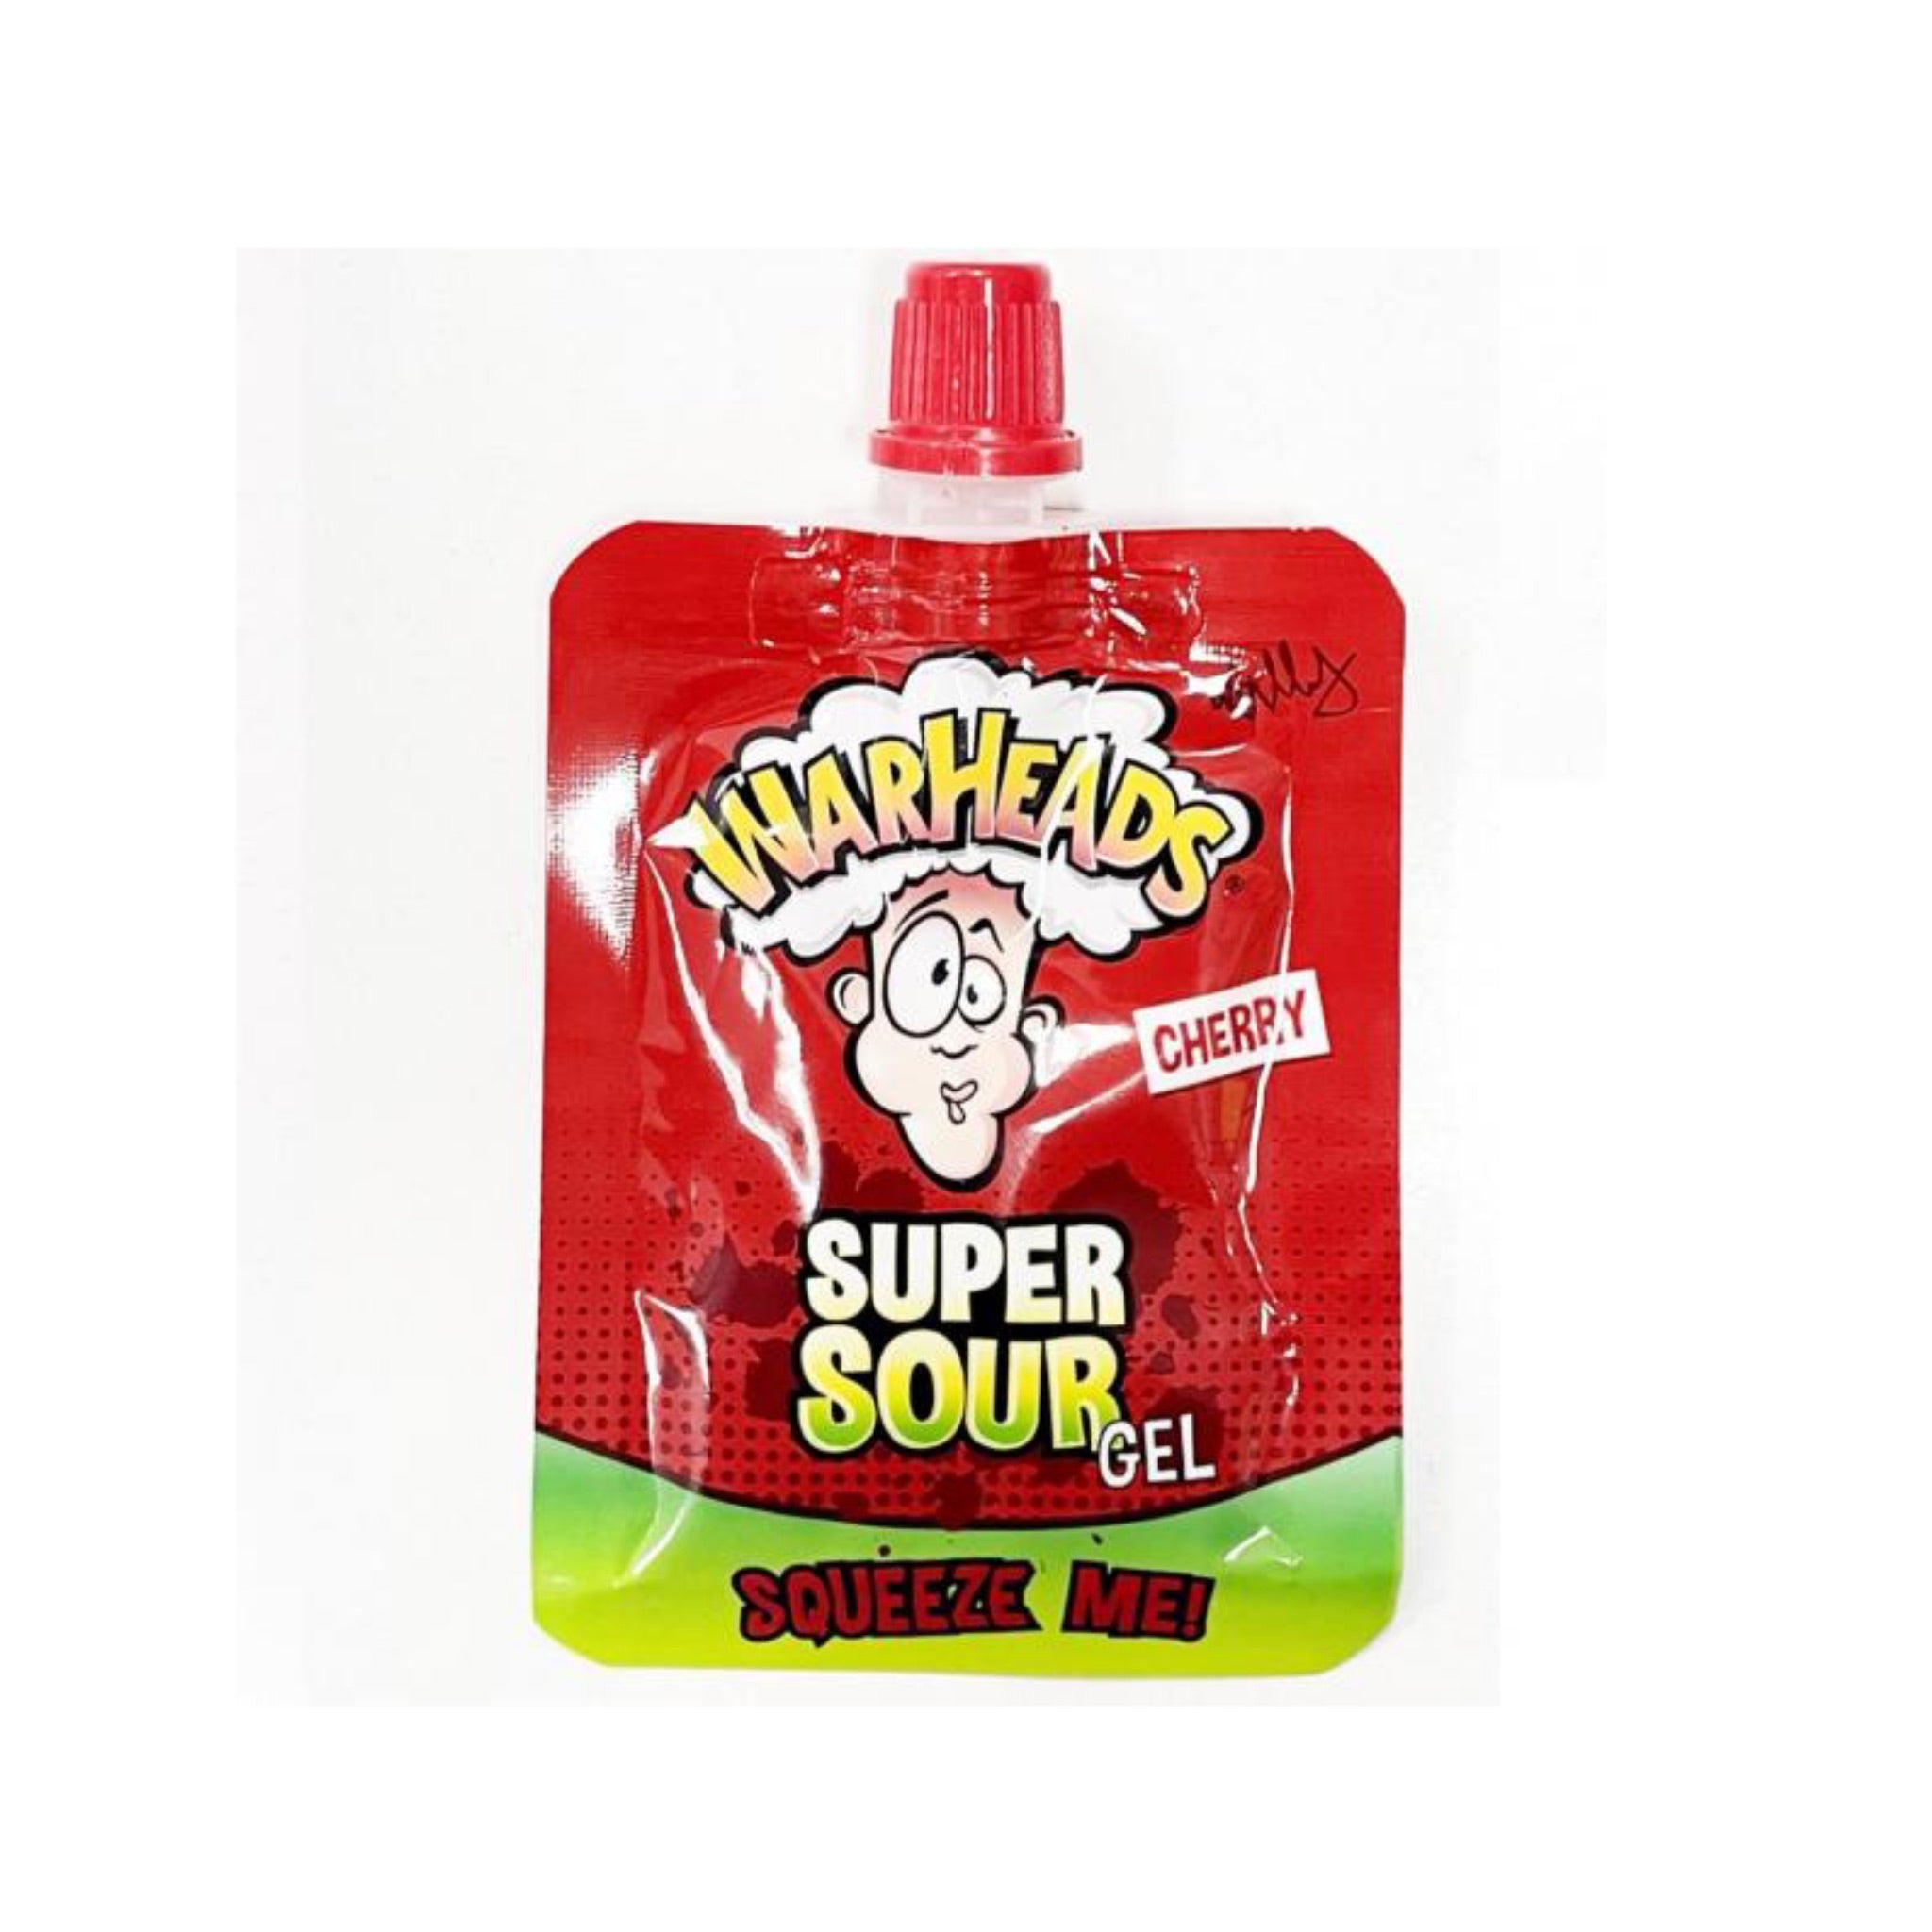 Warheads Super sour gel cherry